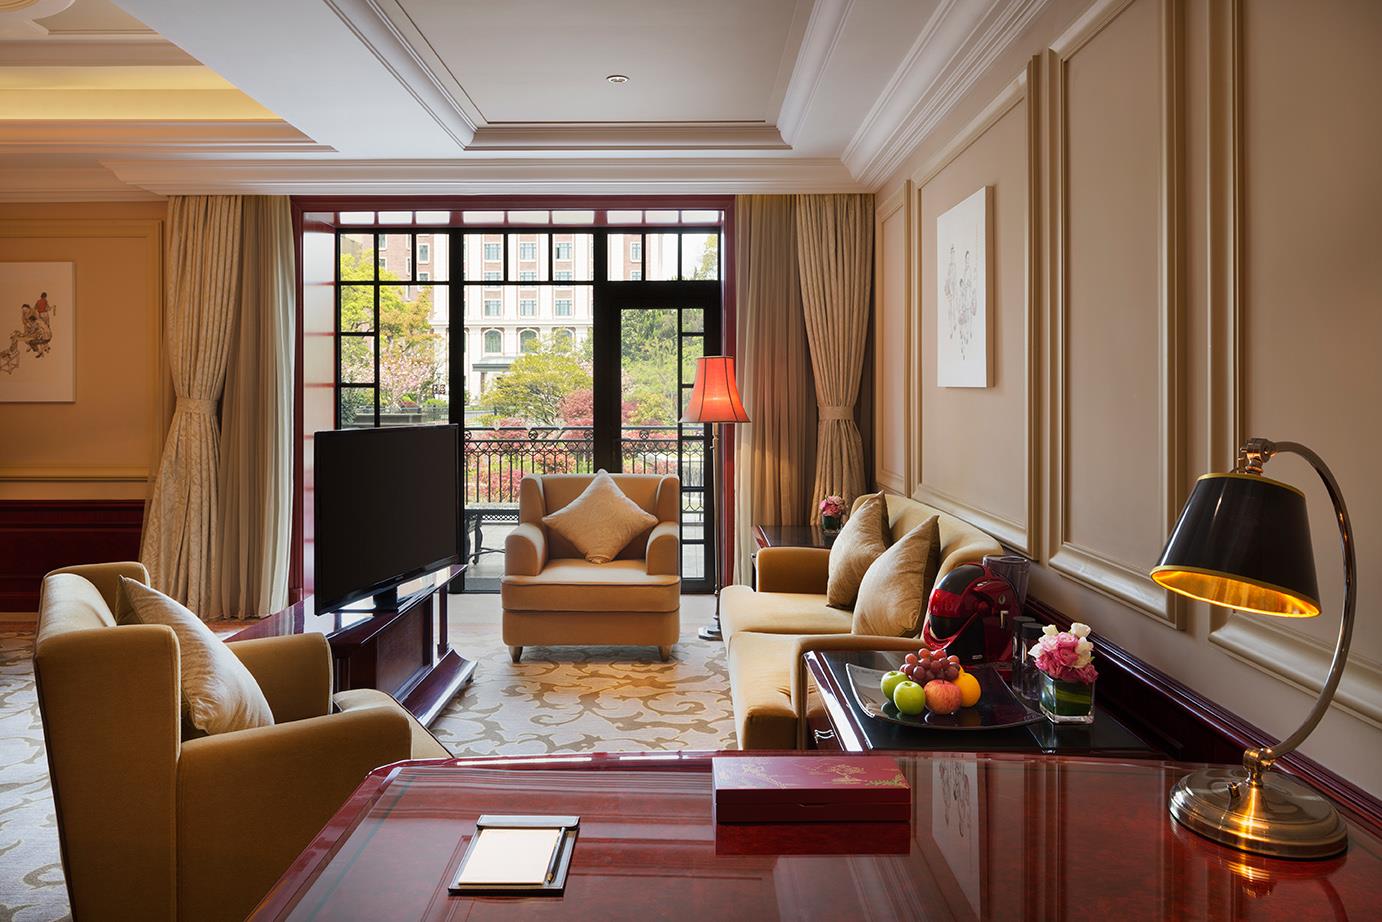 上海瑞金洲际酒店 (上海市) - InterContinental Shanghai Ruijin - 酒店预订 /预定 - 3062条旅客 ...